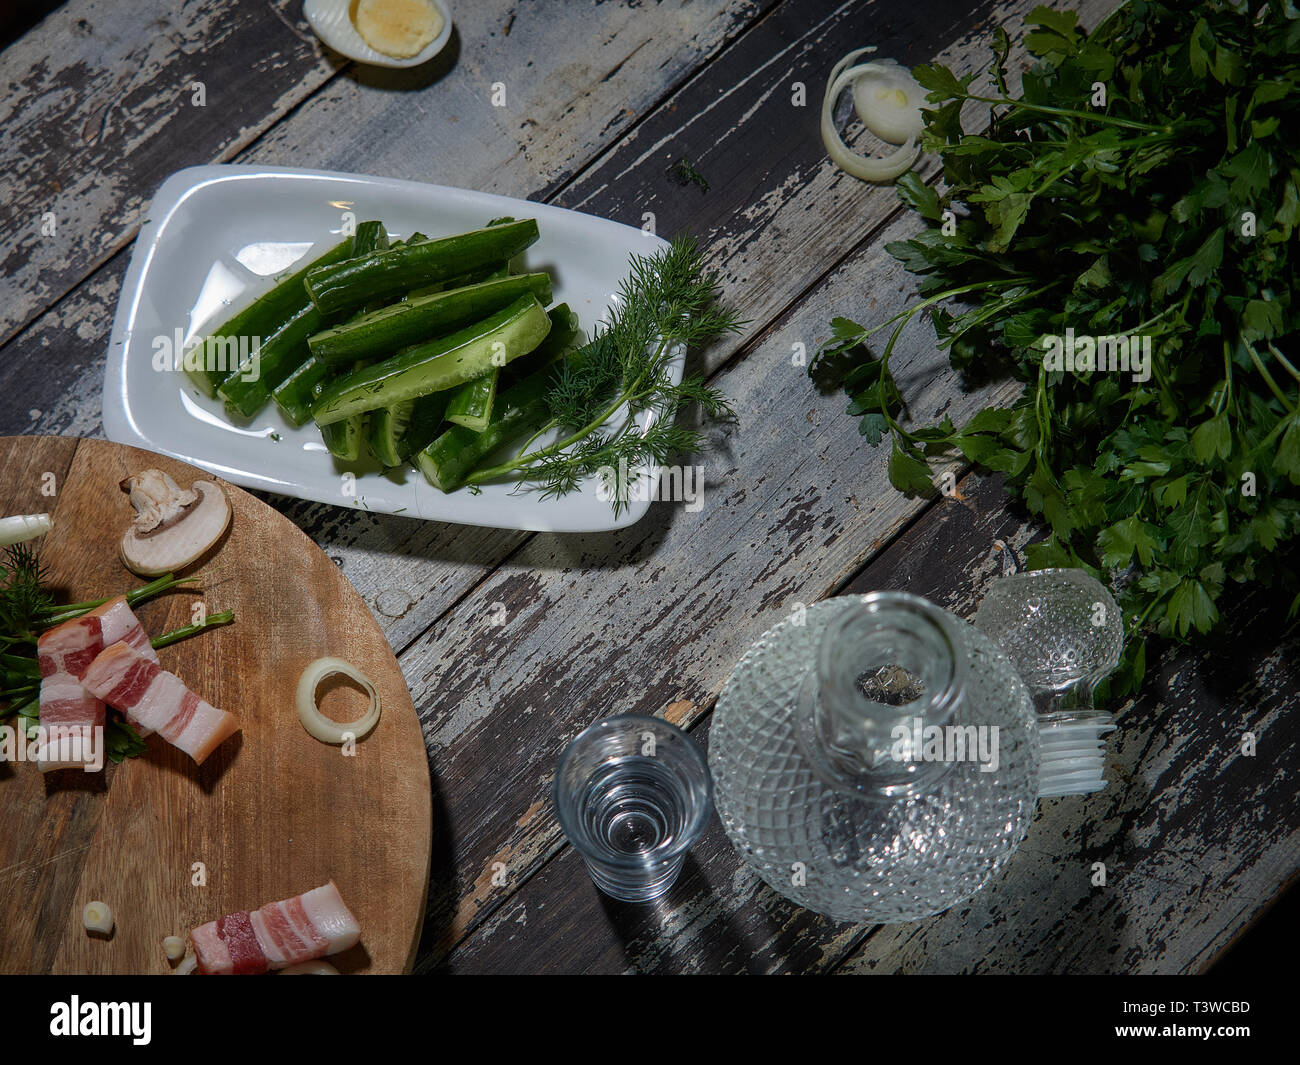 Fresche, bassa-coltivati cetrioli decorate con le cipolle verdi sono serviti. A una certa distanza, tagliare un paio di pezzi di carni suine fresche. Foto Stock